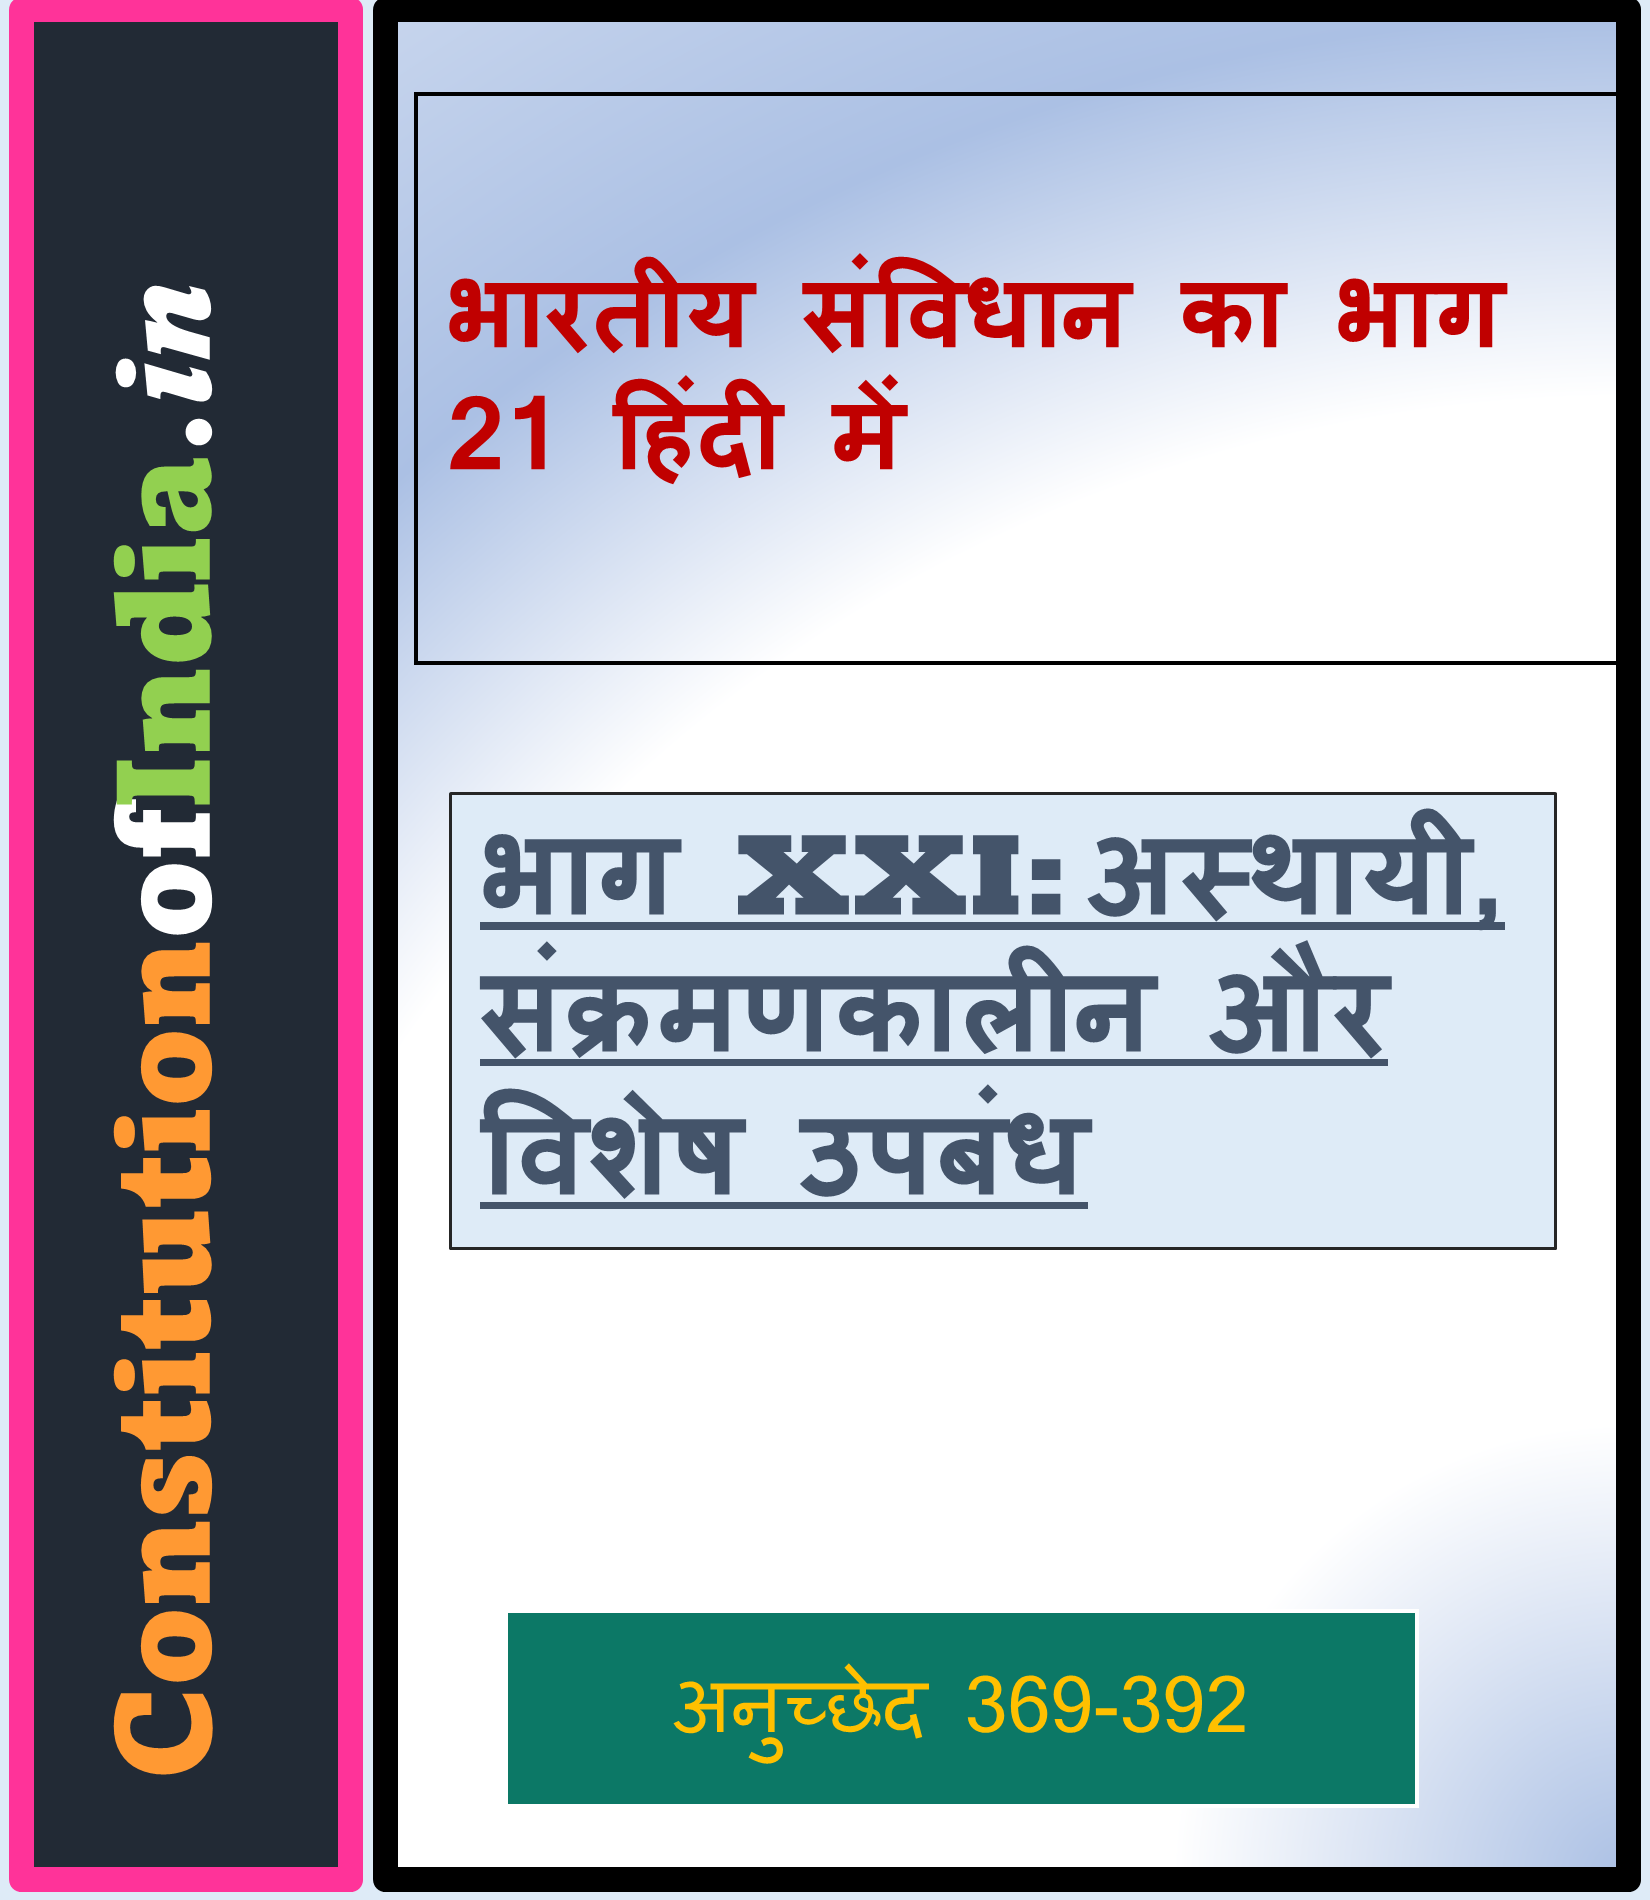 भारतीय संविधान का भाग 21 हिंदी में